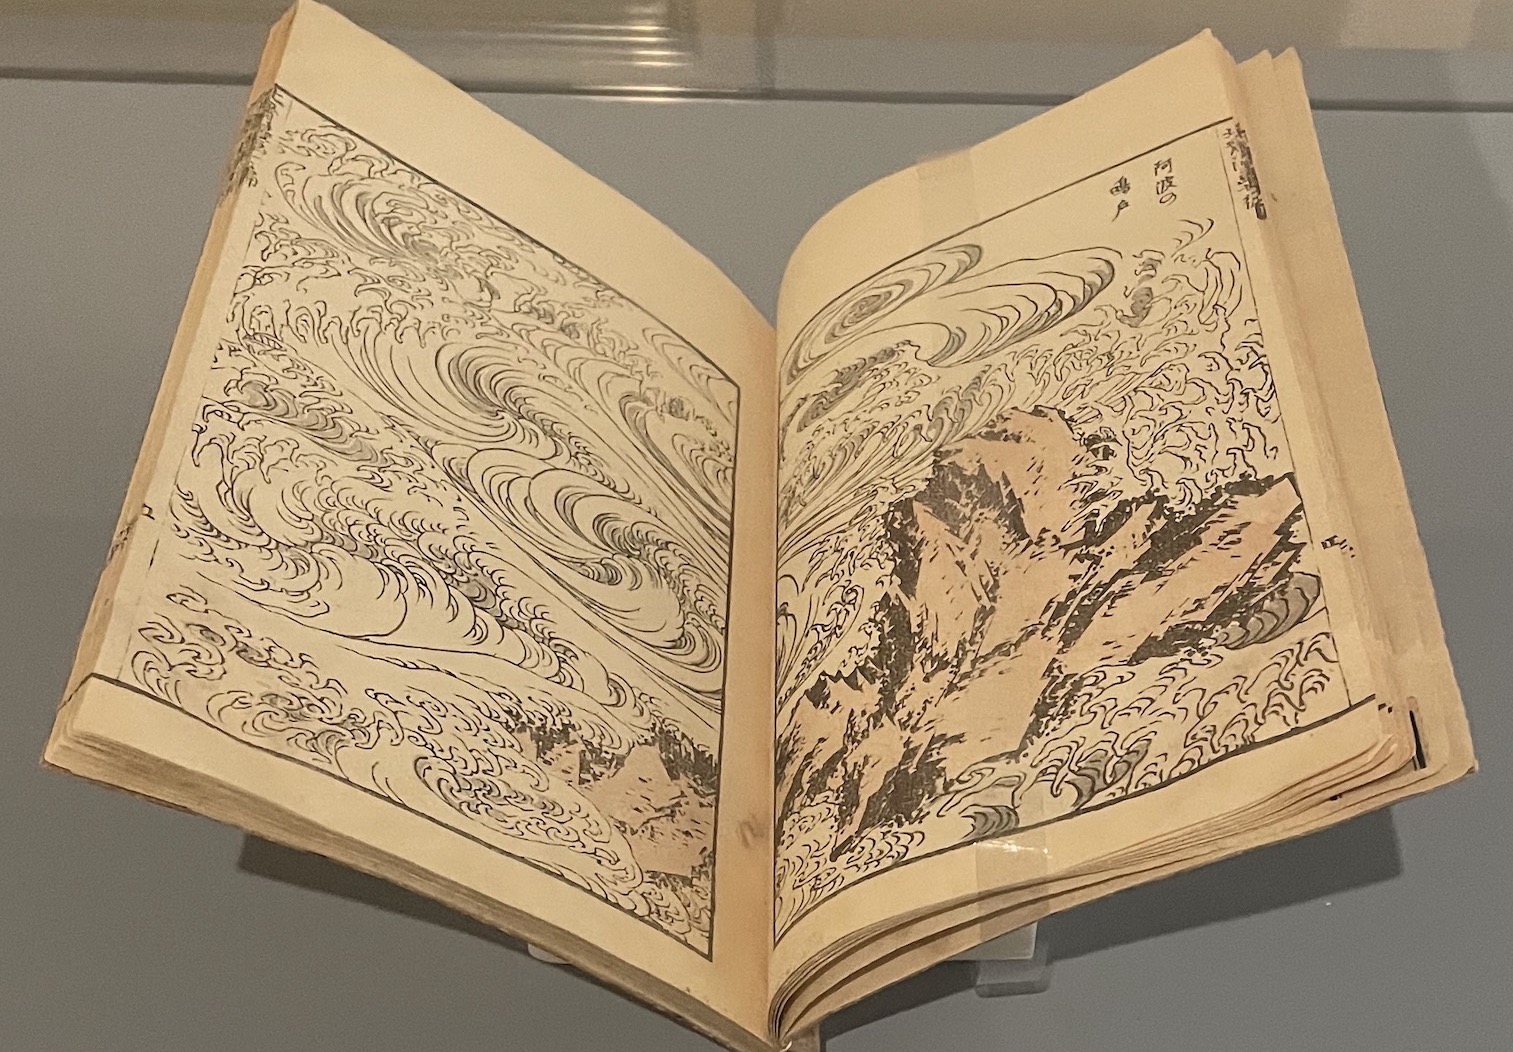 Katsushika Hokusai. Manga, vol. VII, 1817. 